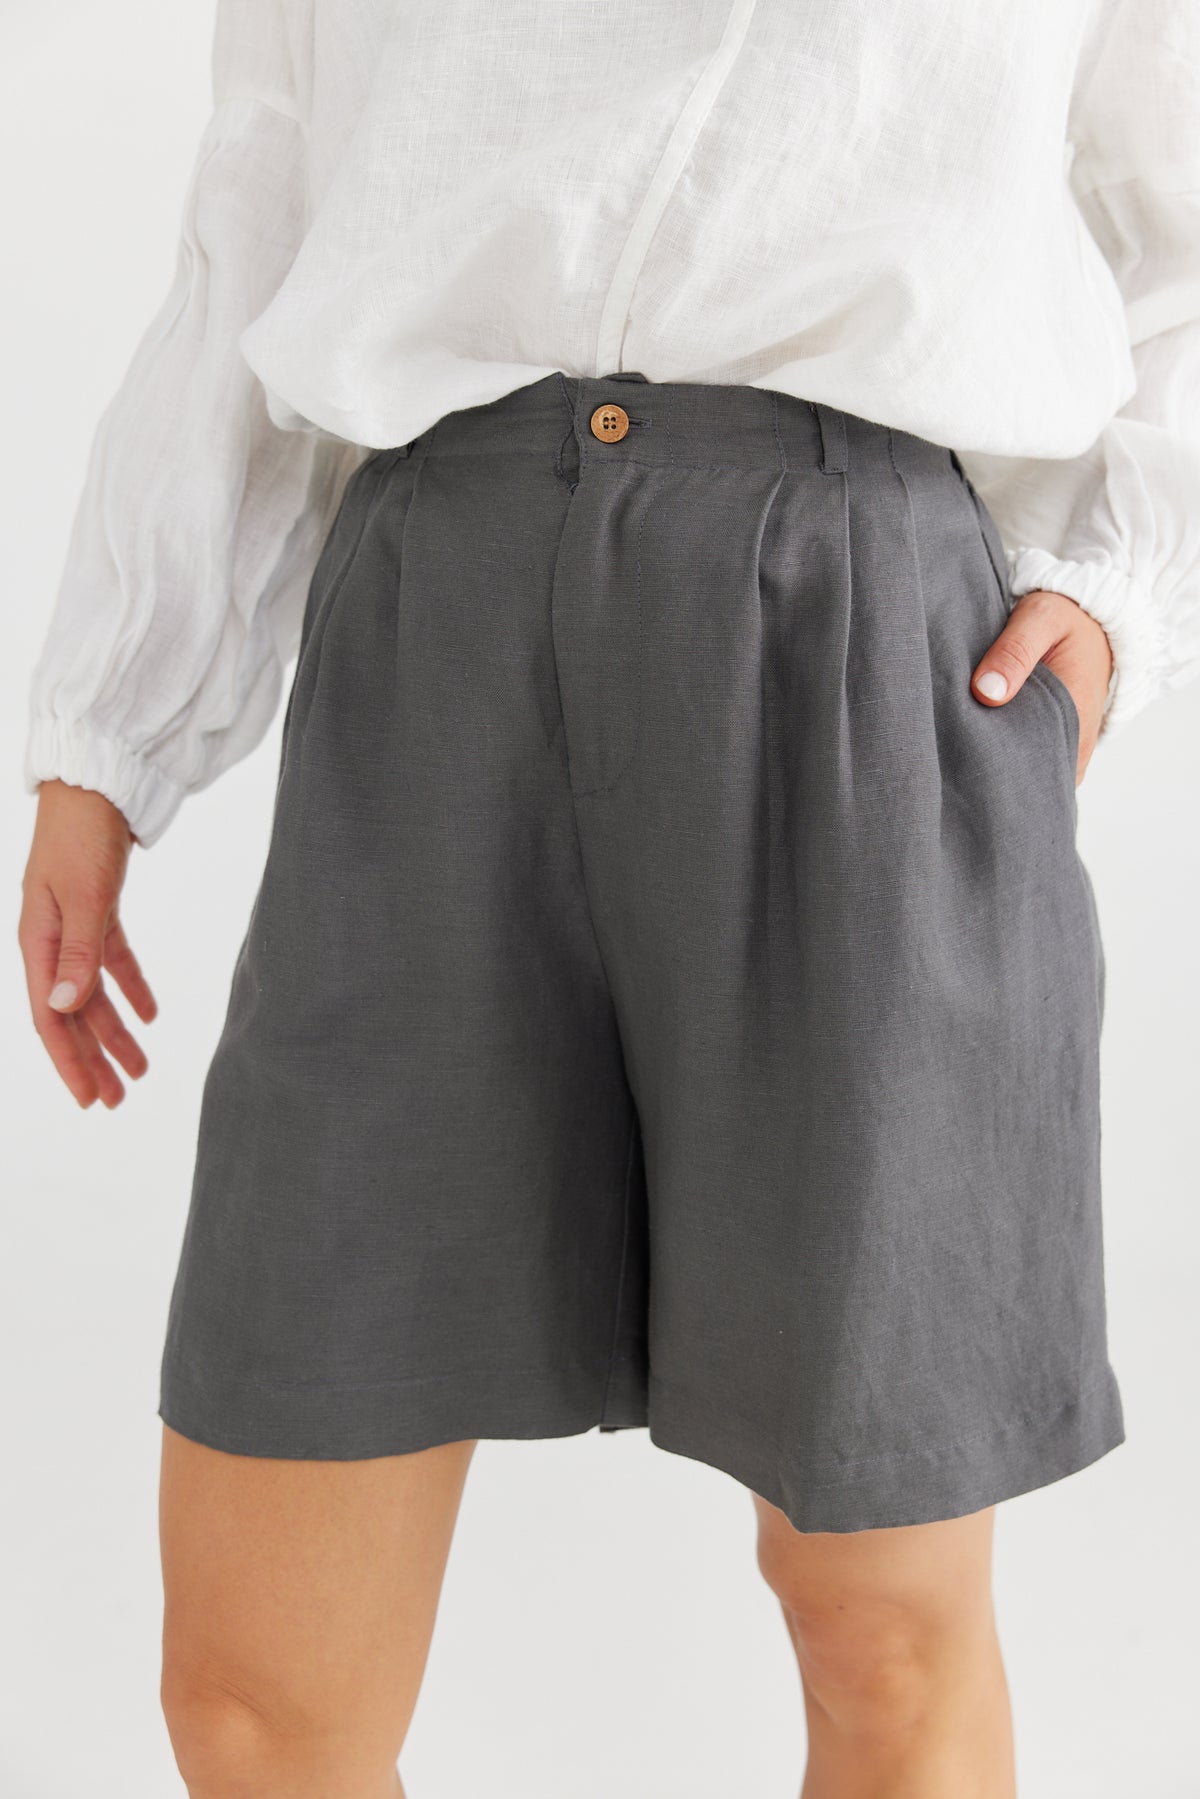 Mandalay Shorts